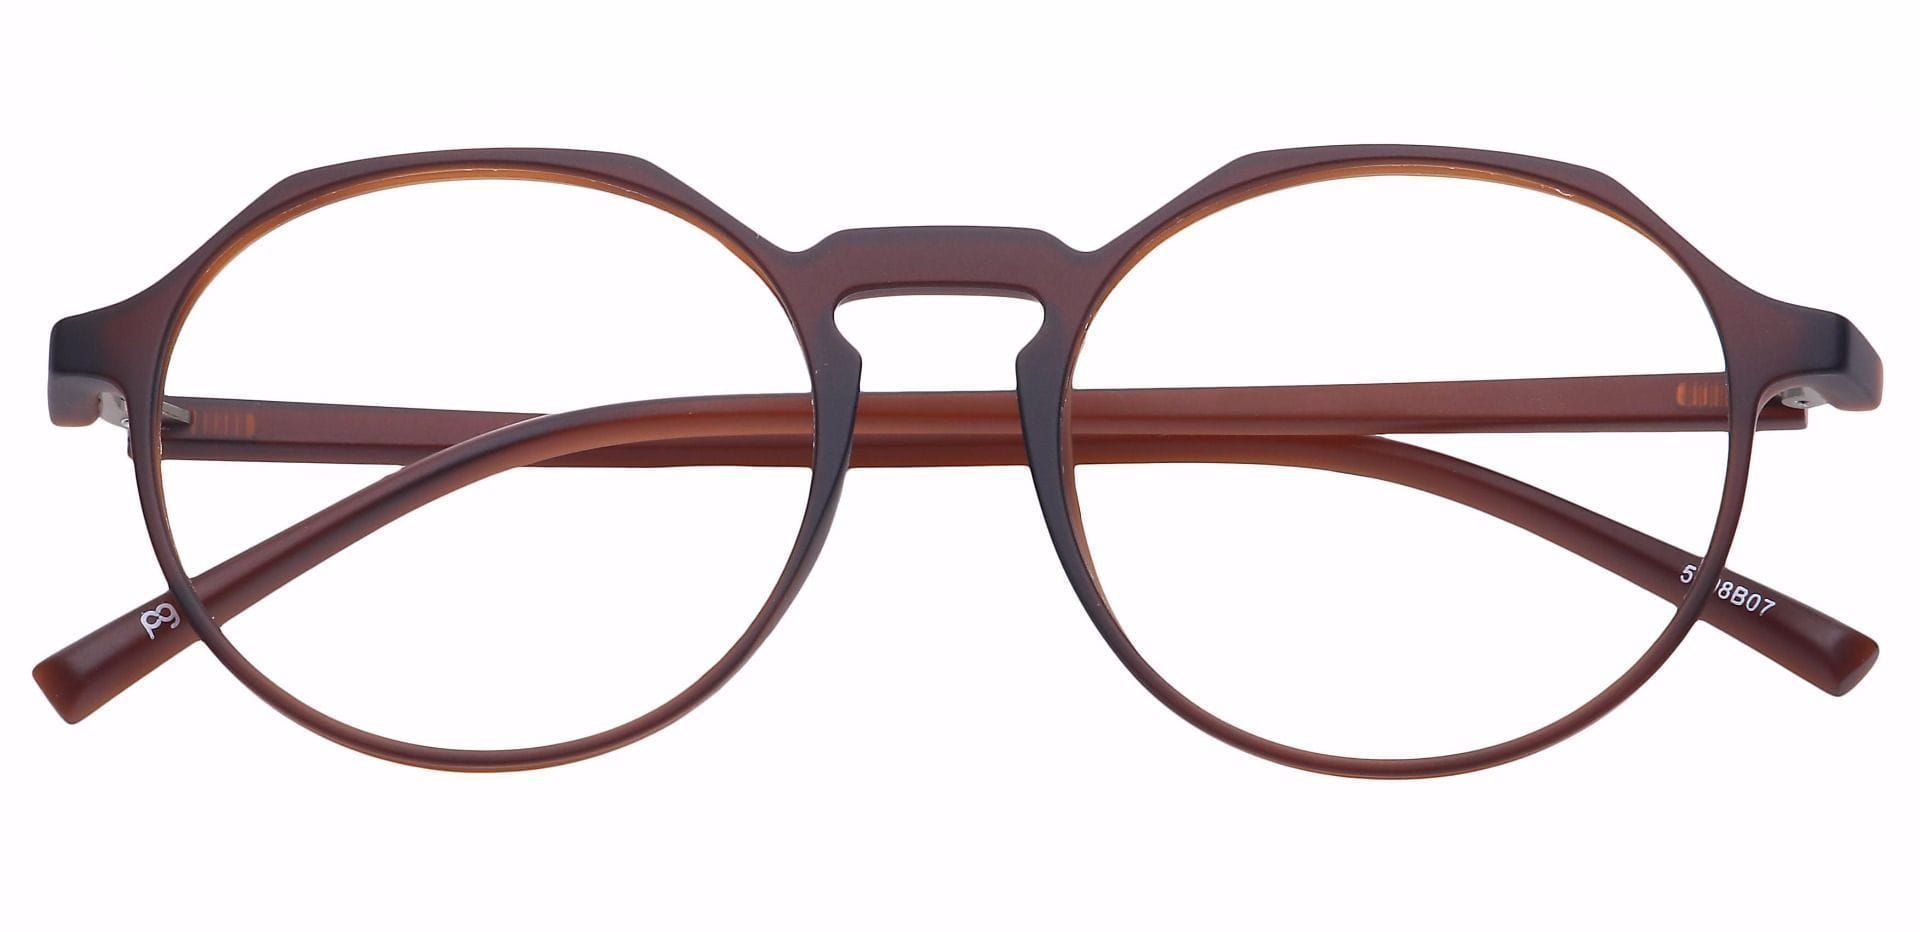 Dash Oval Prescription Glasses - Brown